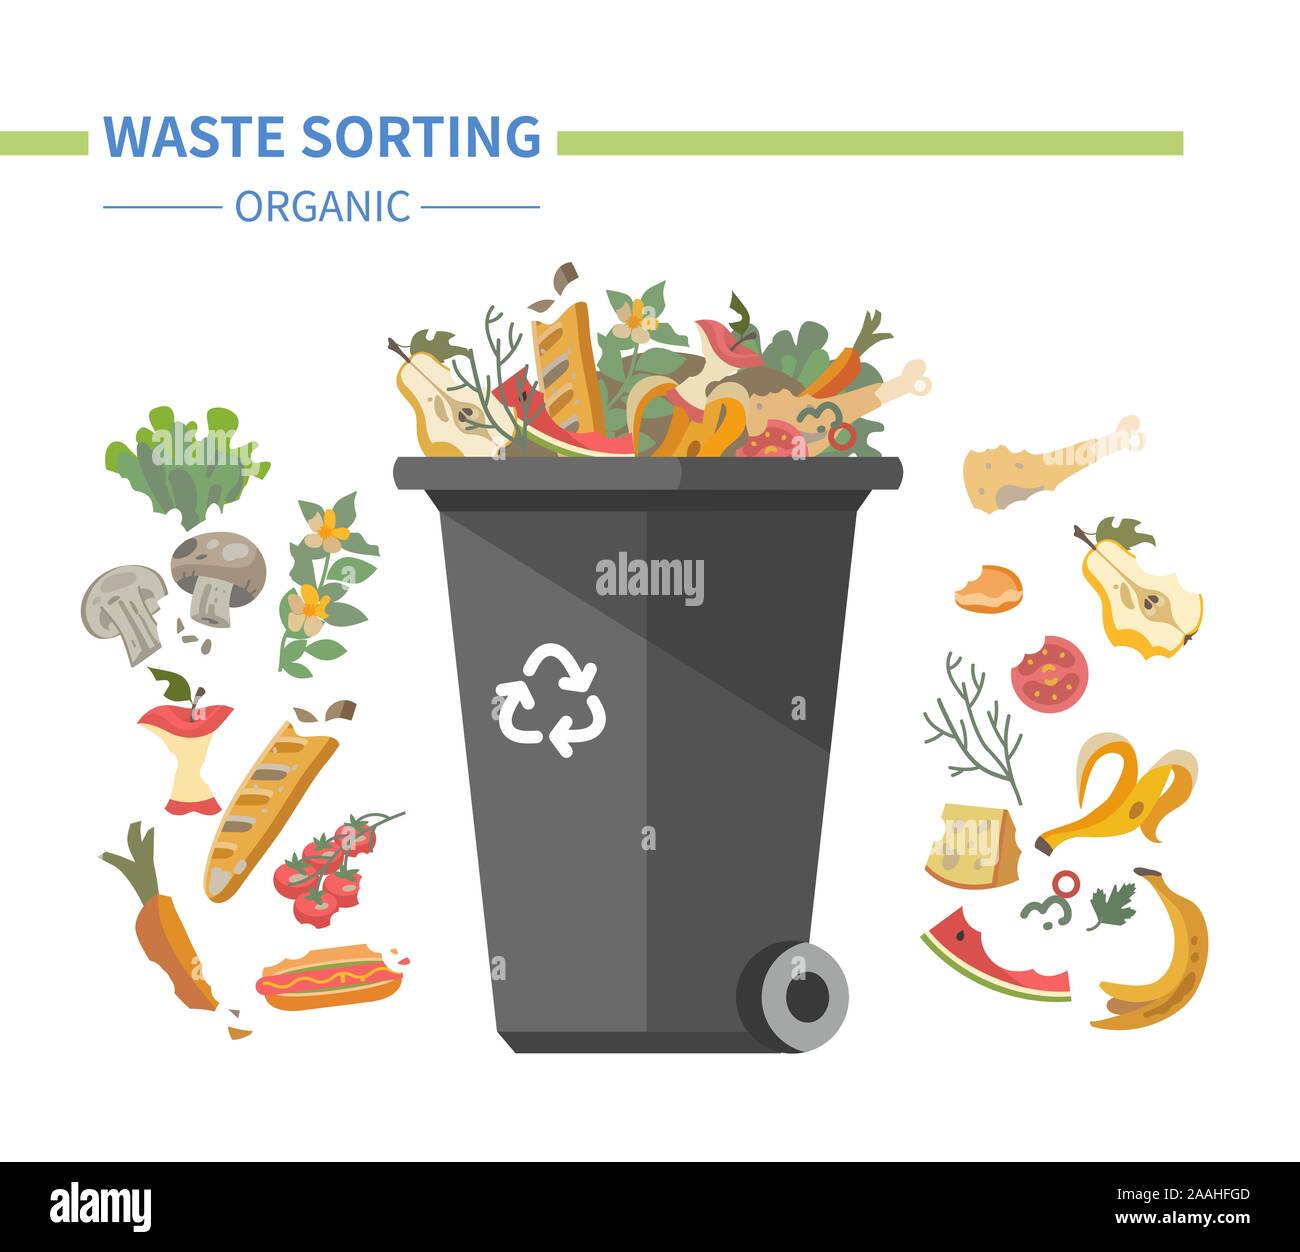 Formas de reciclar¡je de basura orgánica